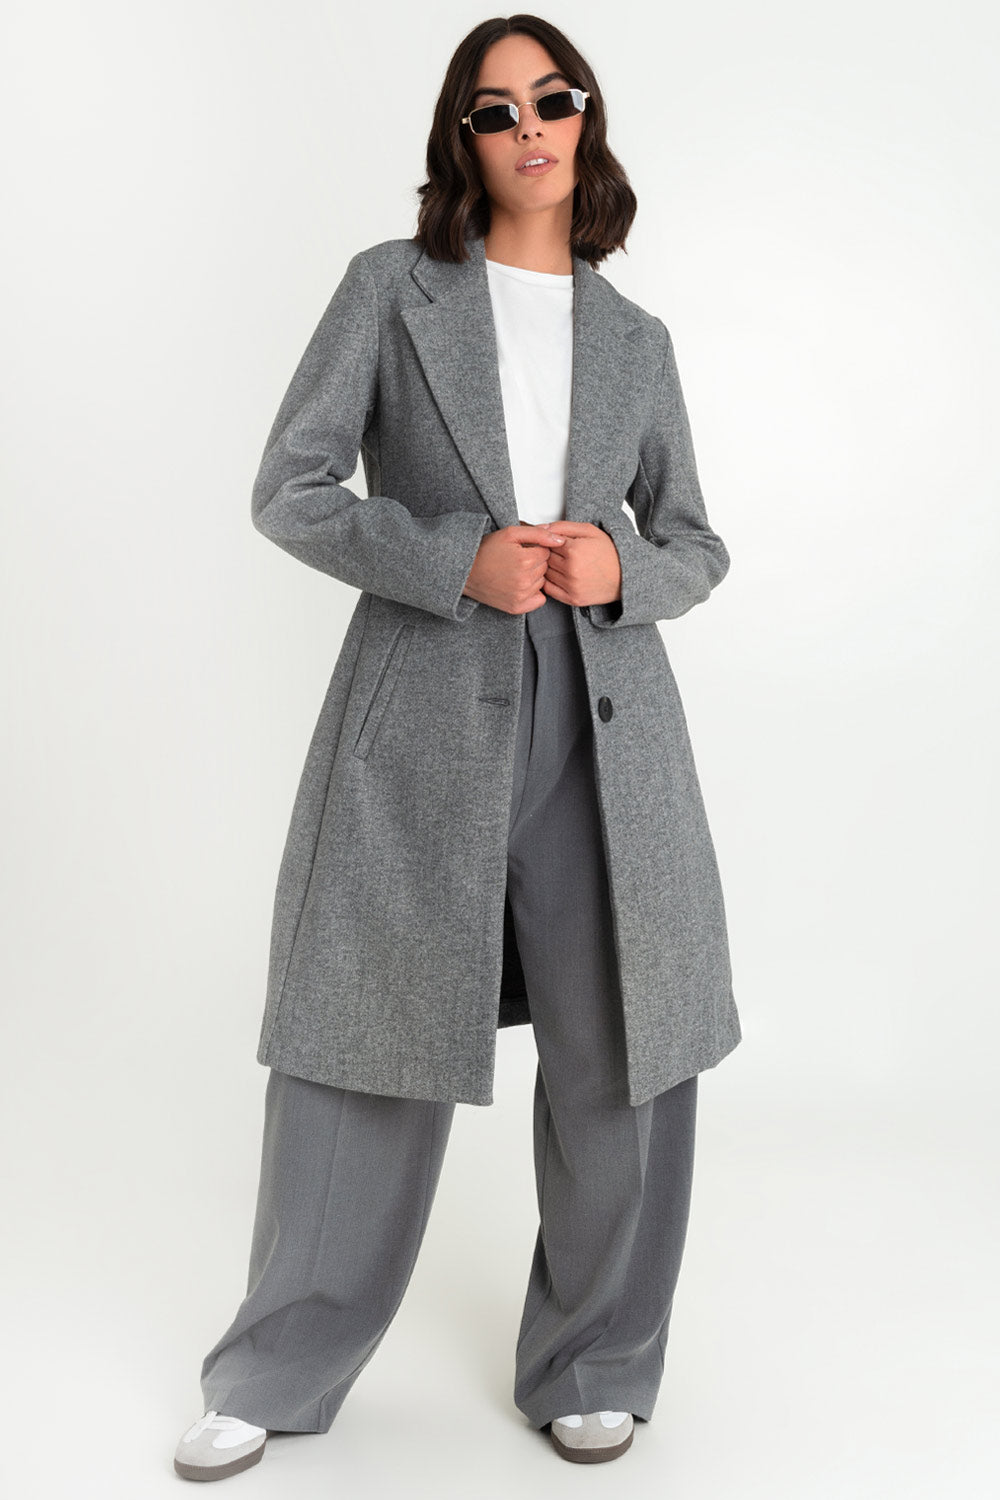 Abrigo largo de fit recto, con solapa y hombreras, manga larga, bolsillos delanteros con vivos y cierre frontal con botones en contraste.